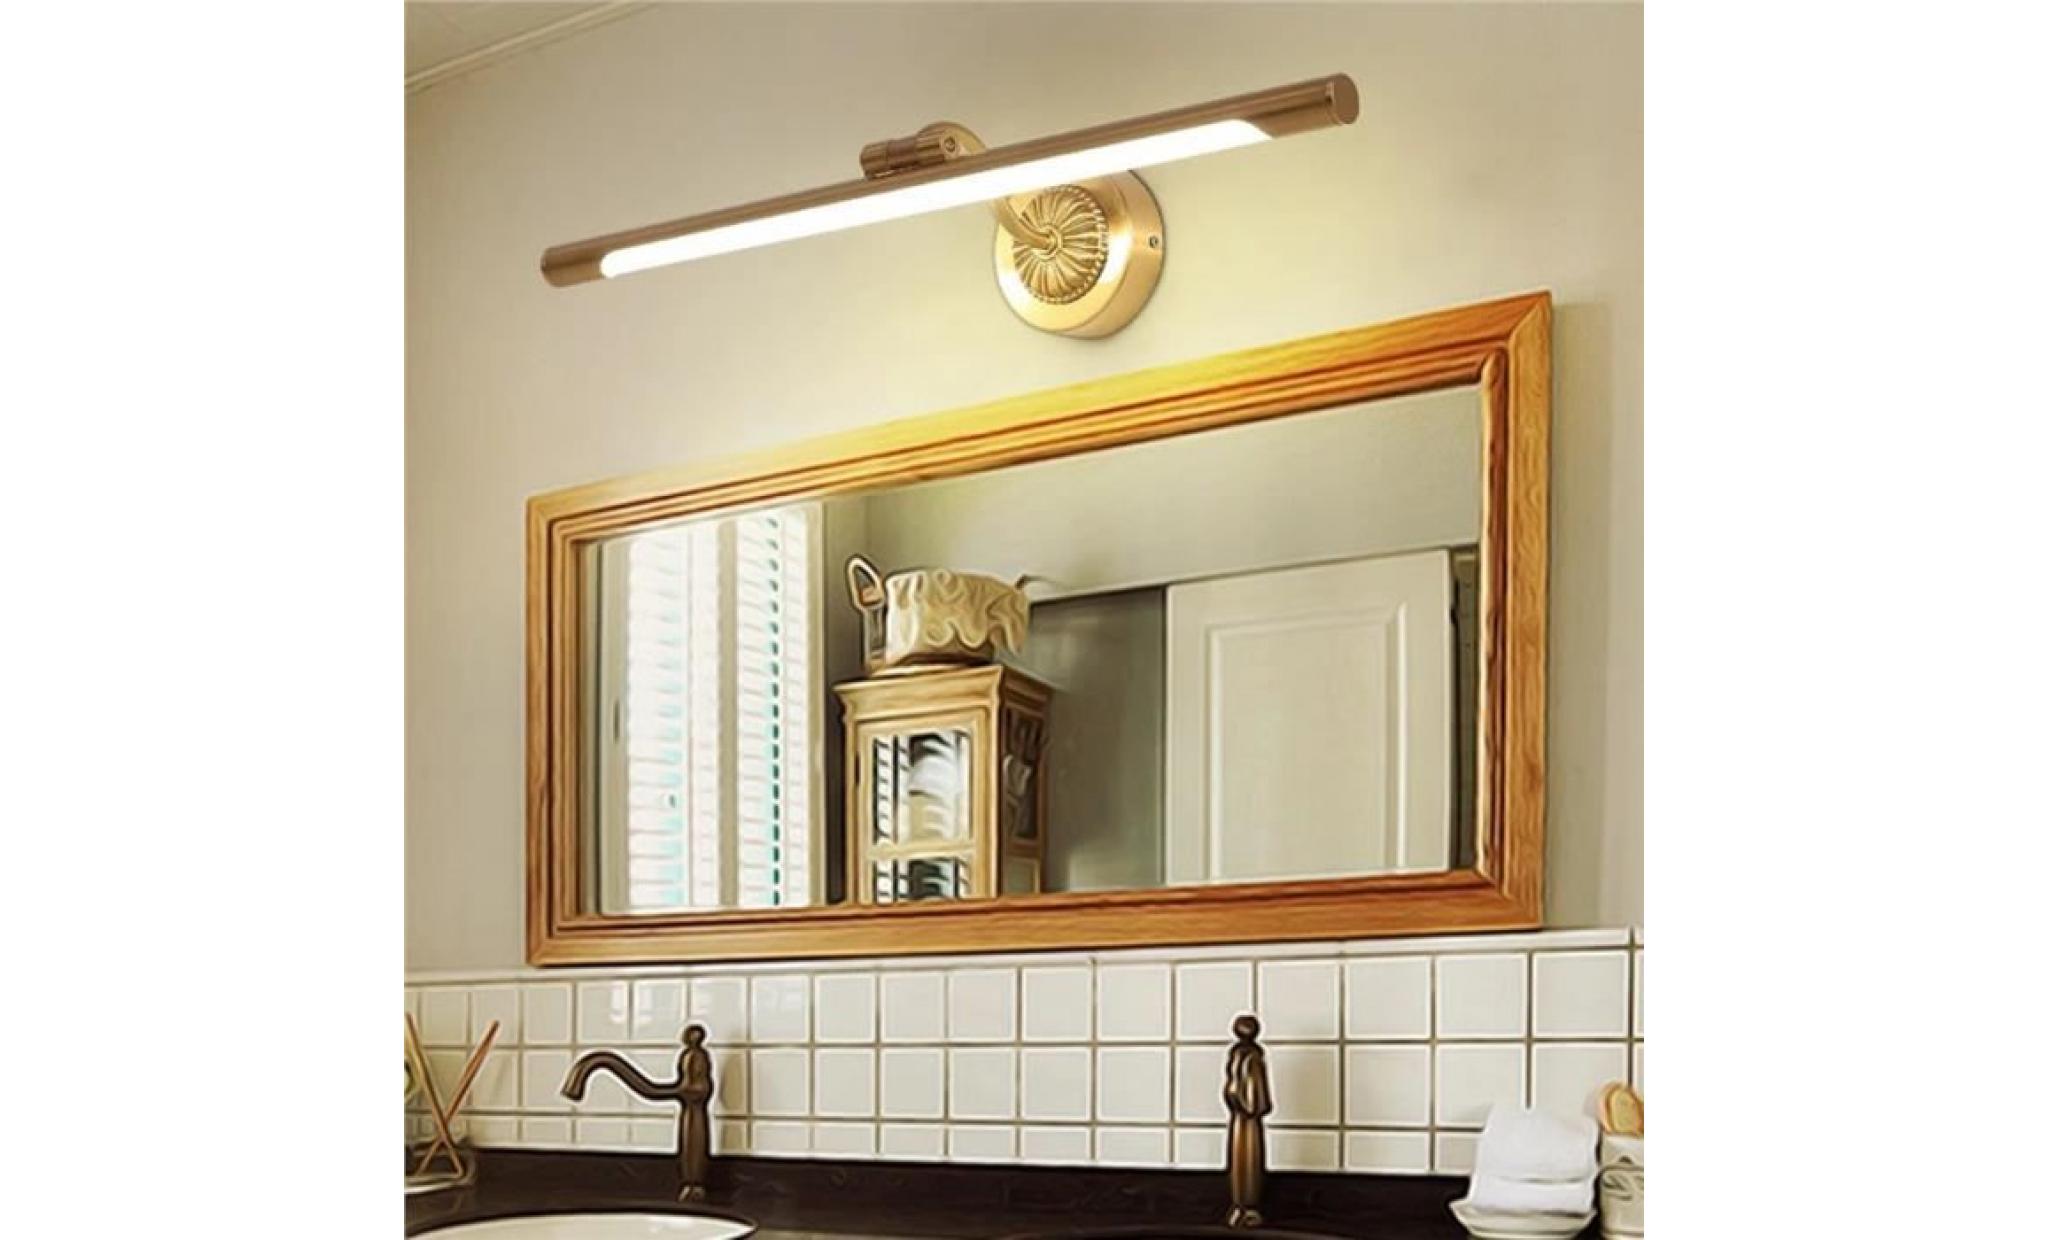 9w 43cm américain led applique murale en cuivre miroir applique murale Éclairage de miroir de salle de bain (lumière neutre) pas cher